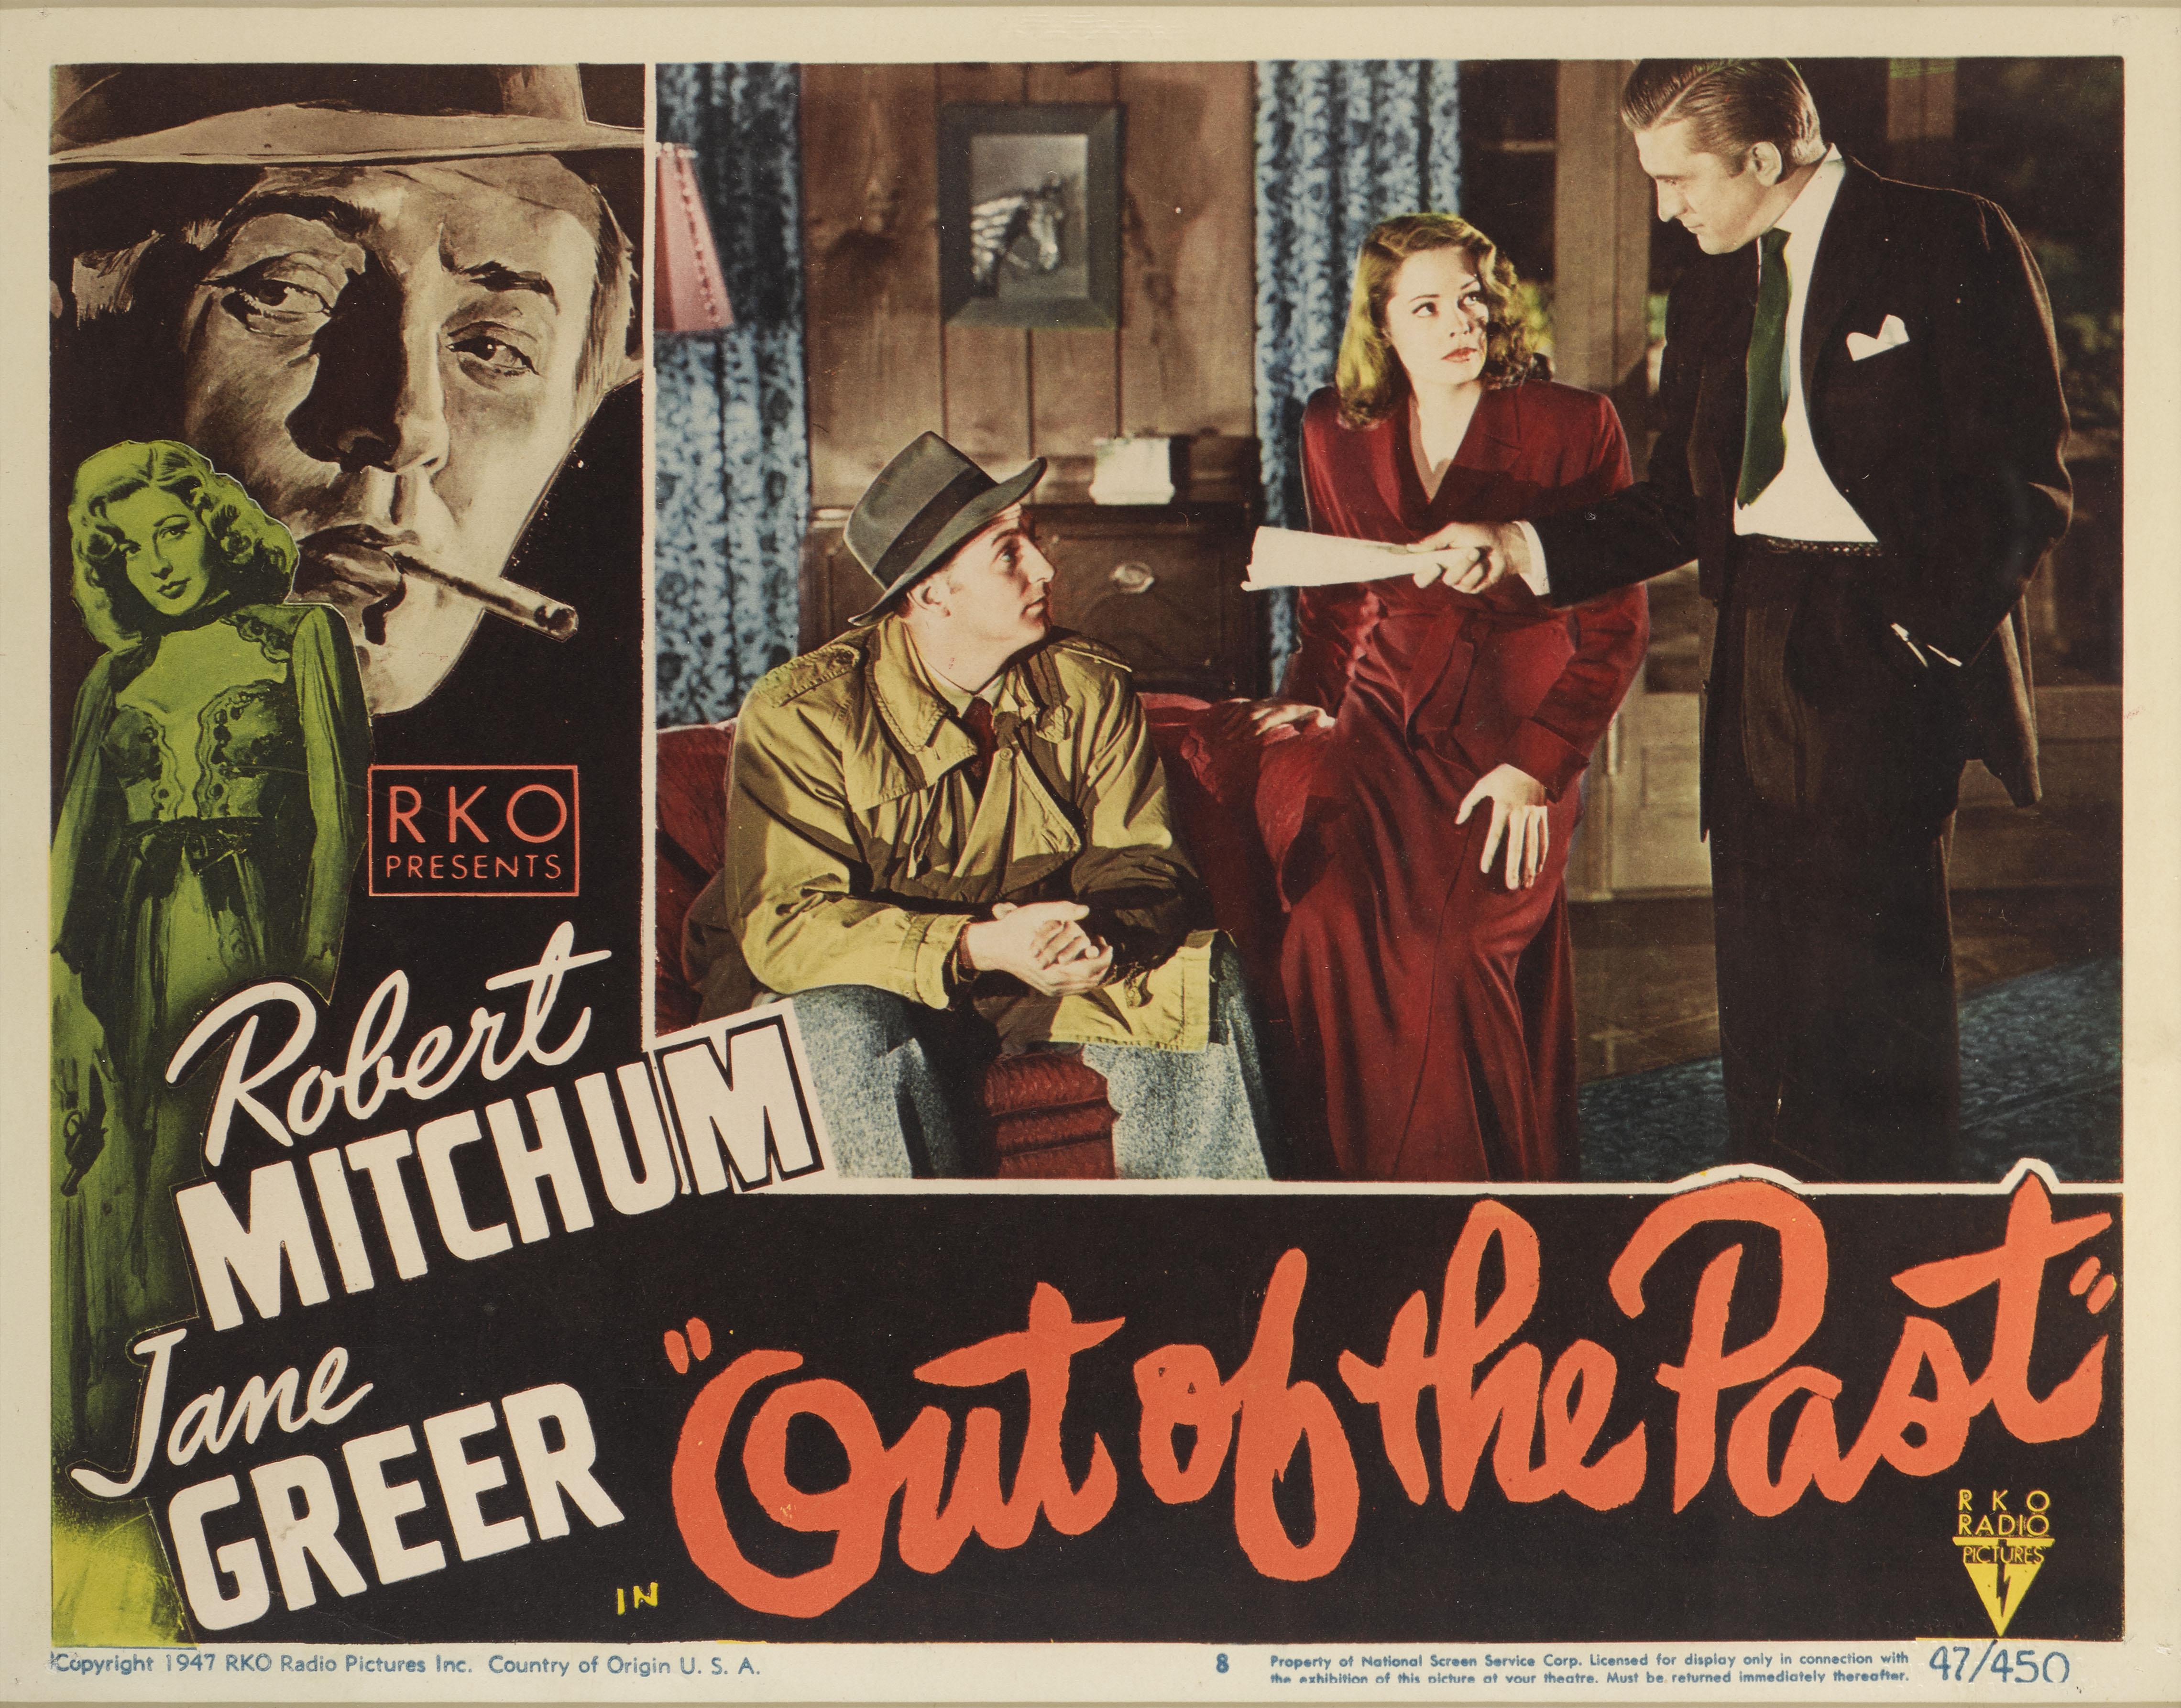 Original US-Lobbykarte Nummer 8 für den Film Noir Out of the Past von 1947.
Der Film mit Robert Mitchum, Jane Greer und Kirk Douglas in den Hauptrollen wurde unter der Regie von Jacques Tourneur gedreht.
Das Werk ist mit UV-Plexiglas in einem